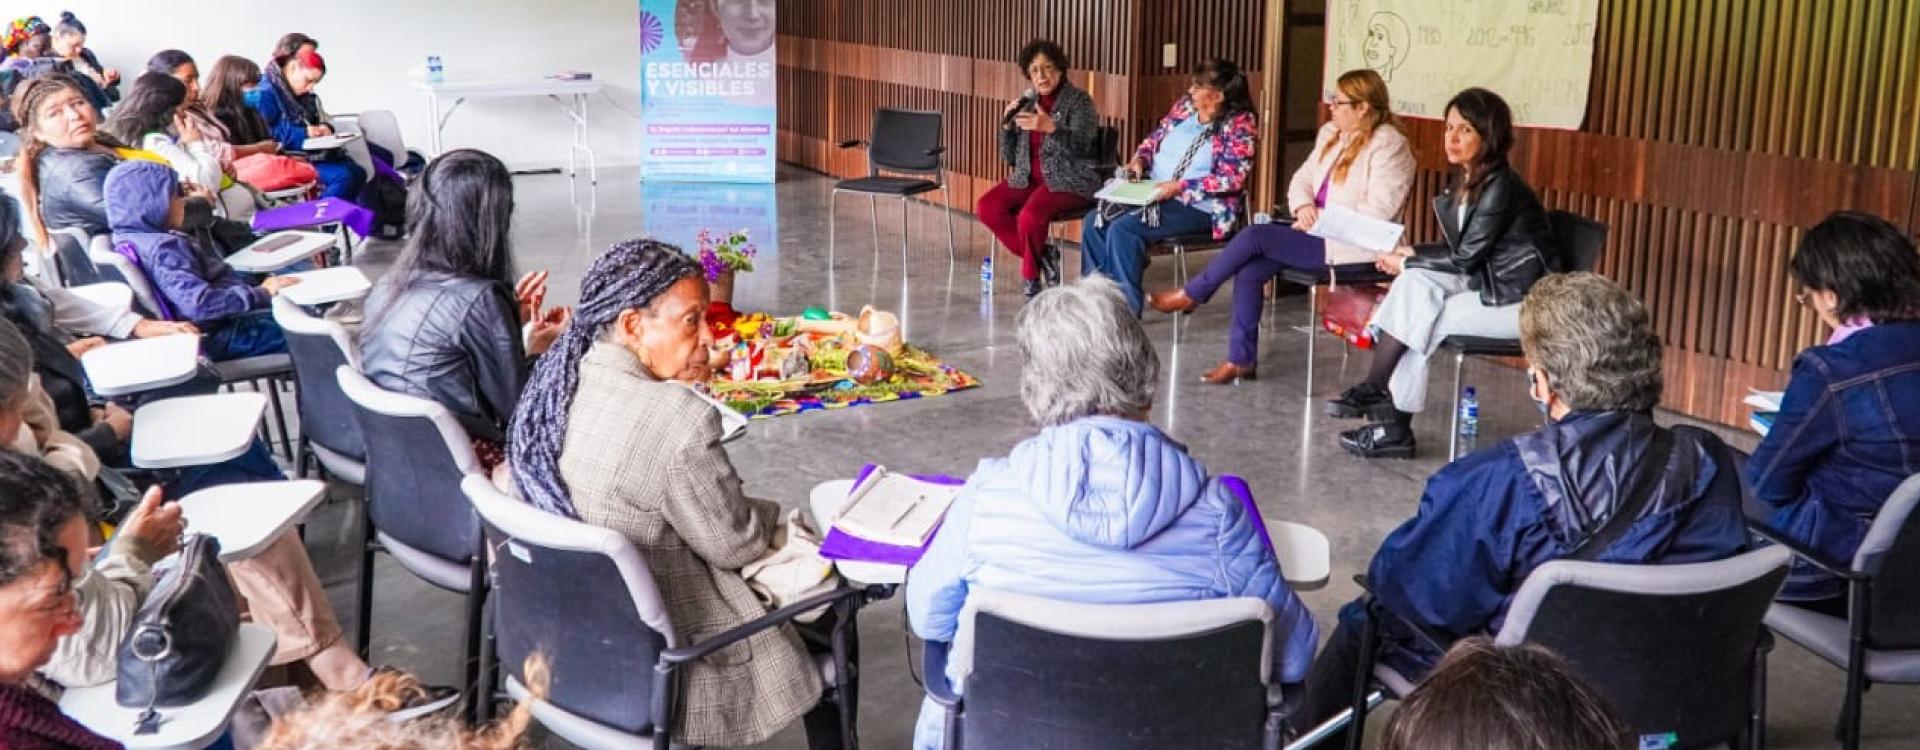 Encuentro de mujeres para conversatorio sobre los derechos humanos